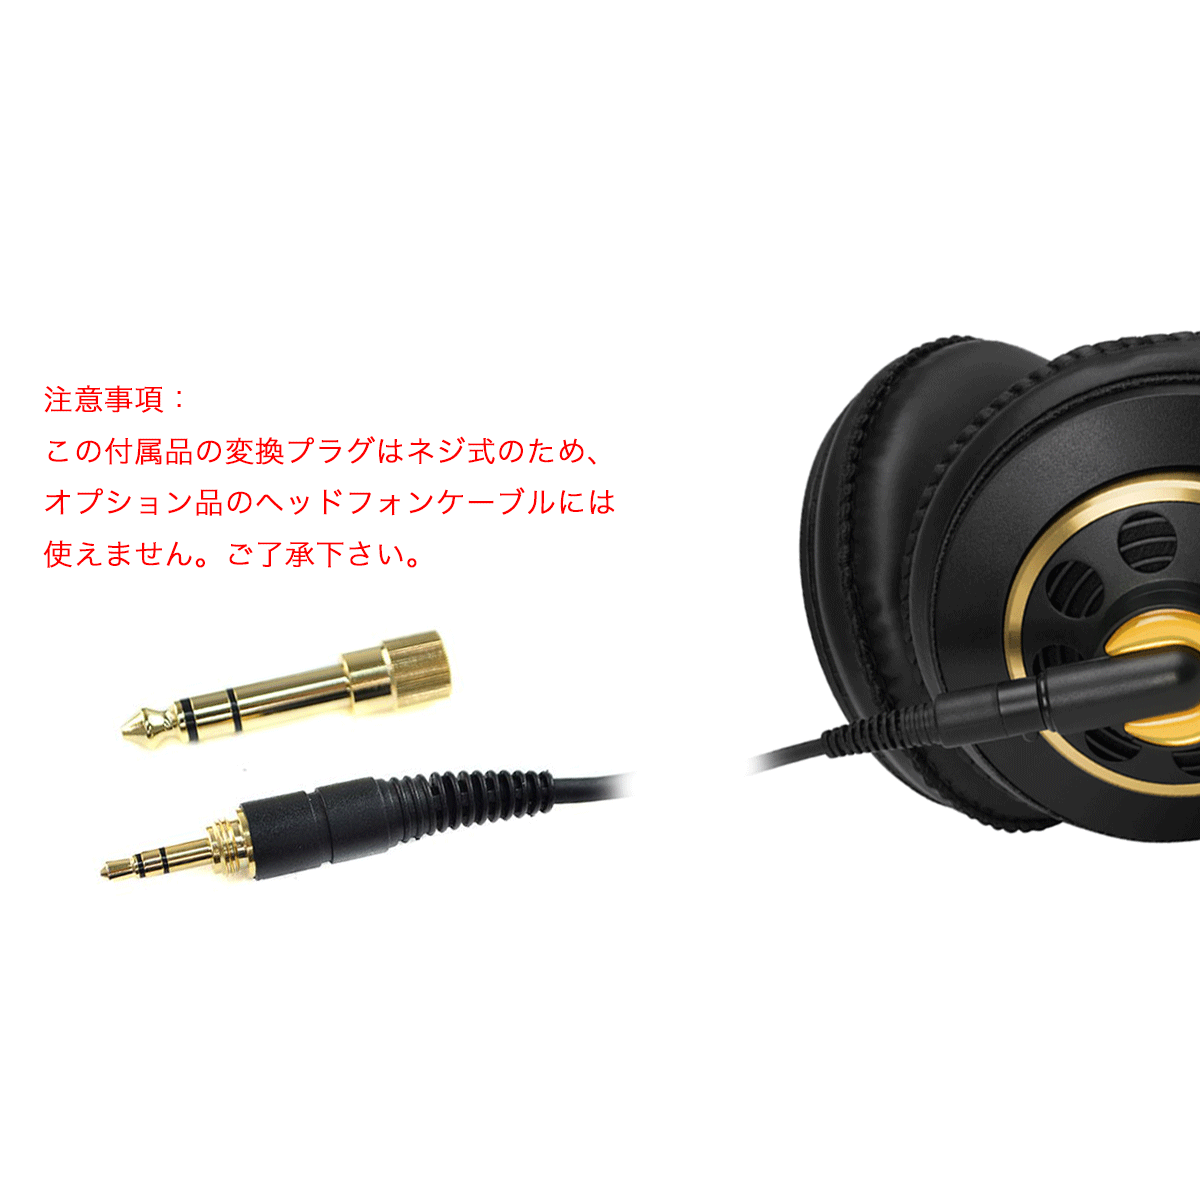 世界的に有名な MOGAMI モガミ 2799 ヘッドフォンケーブル AKGタイプ 1.5m S型ステレオミニフォン 